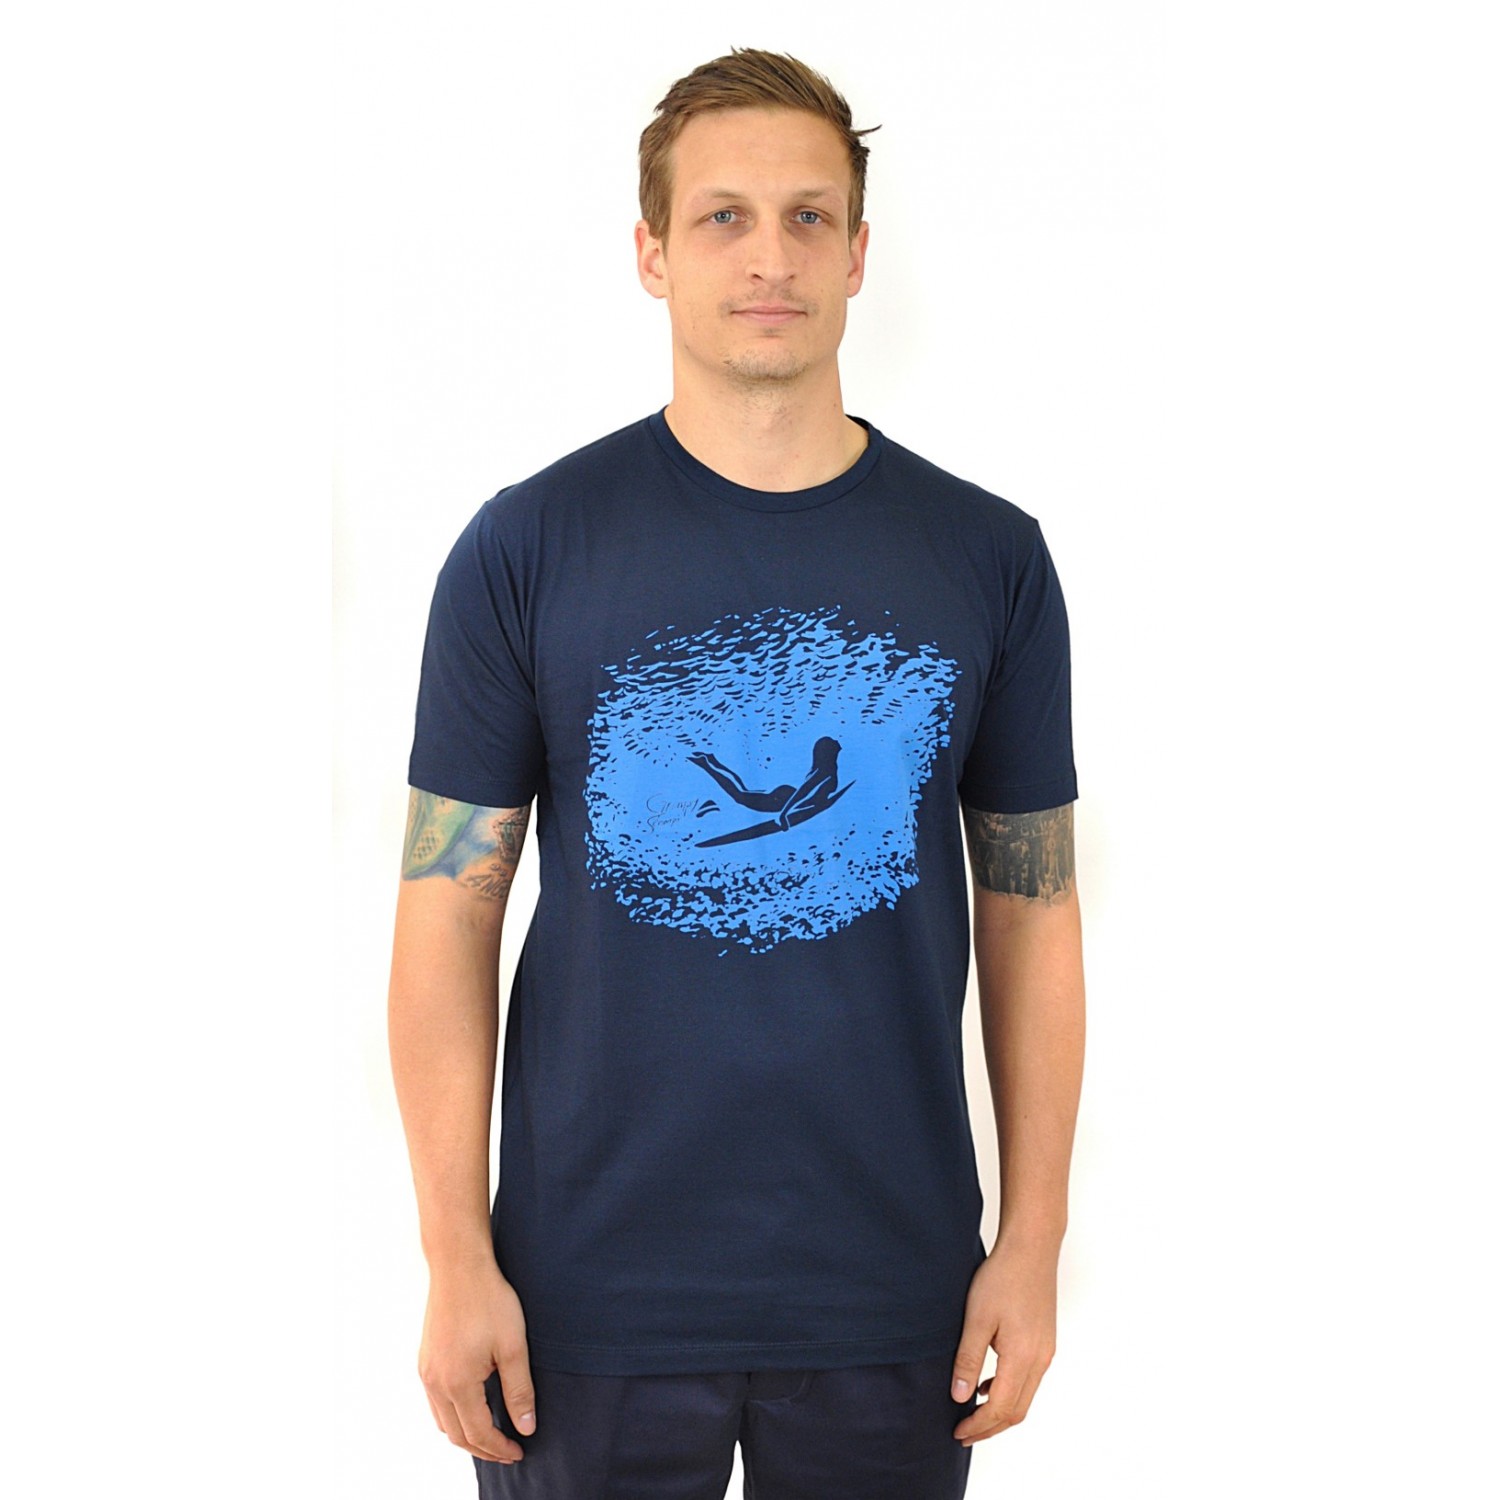 grumpyscampi t-shirt duckdive blue